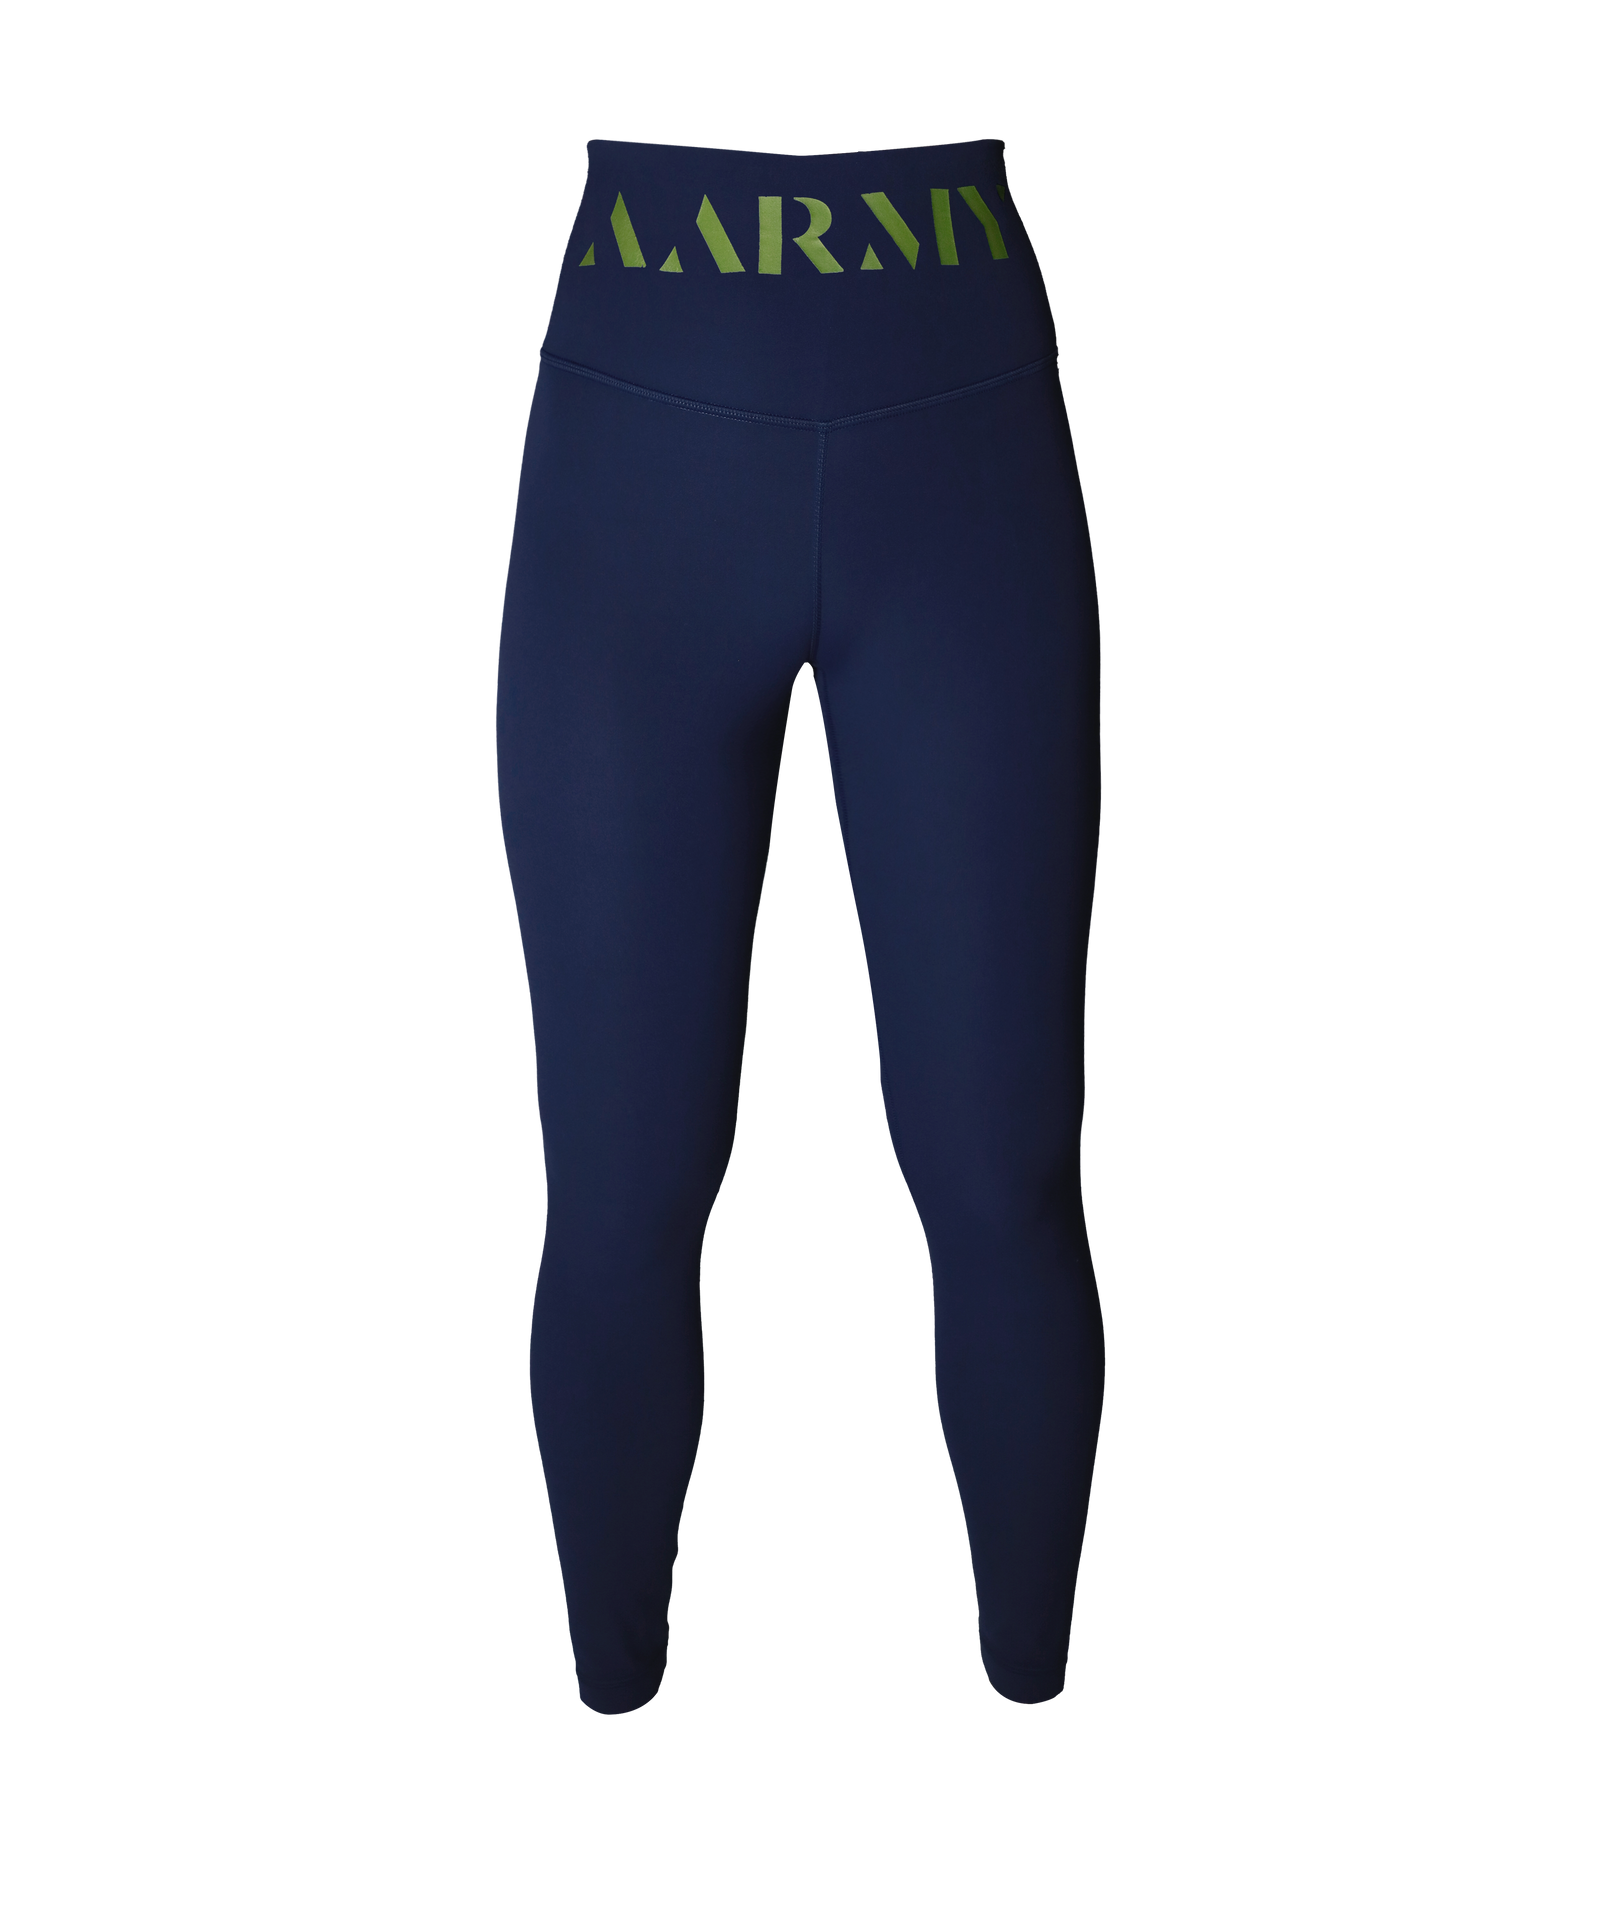 utility blue lululemon leggings full length